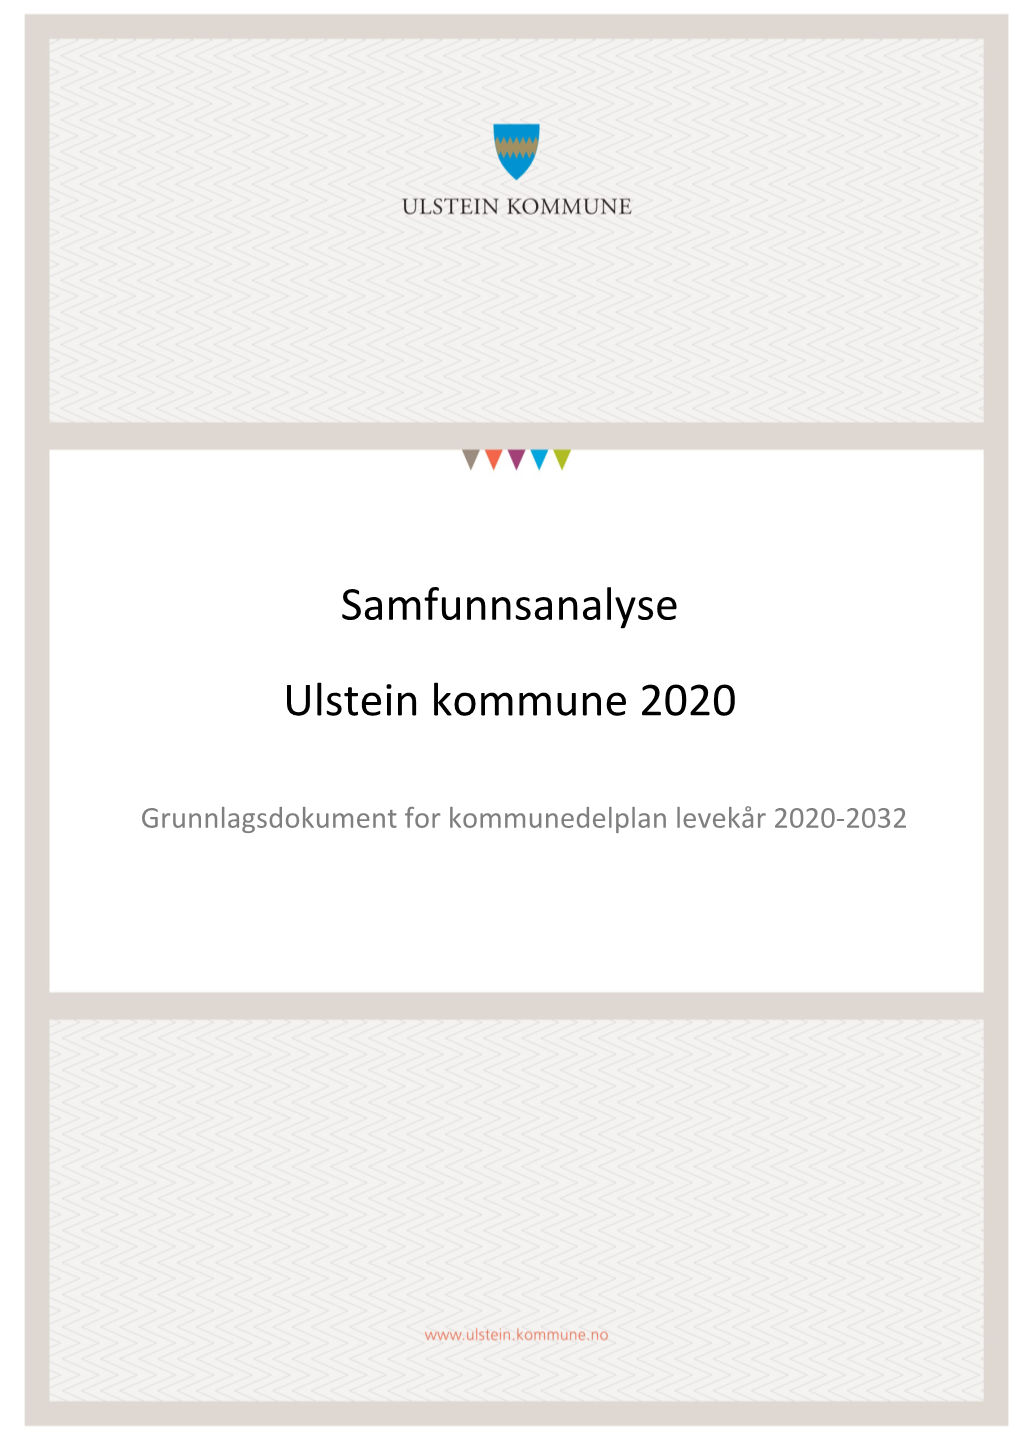 Samfunnsanalysen Frå 2020